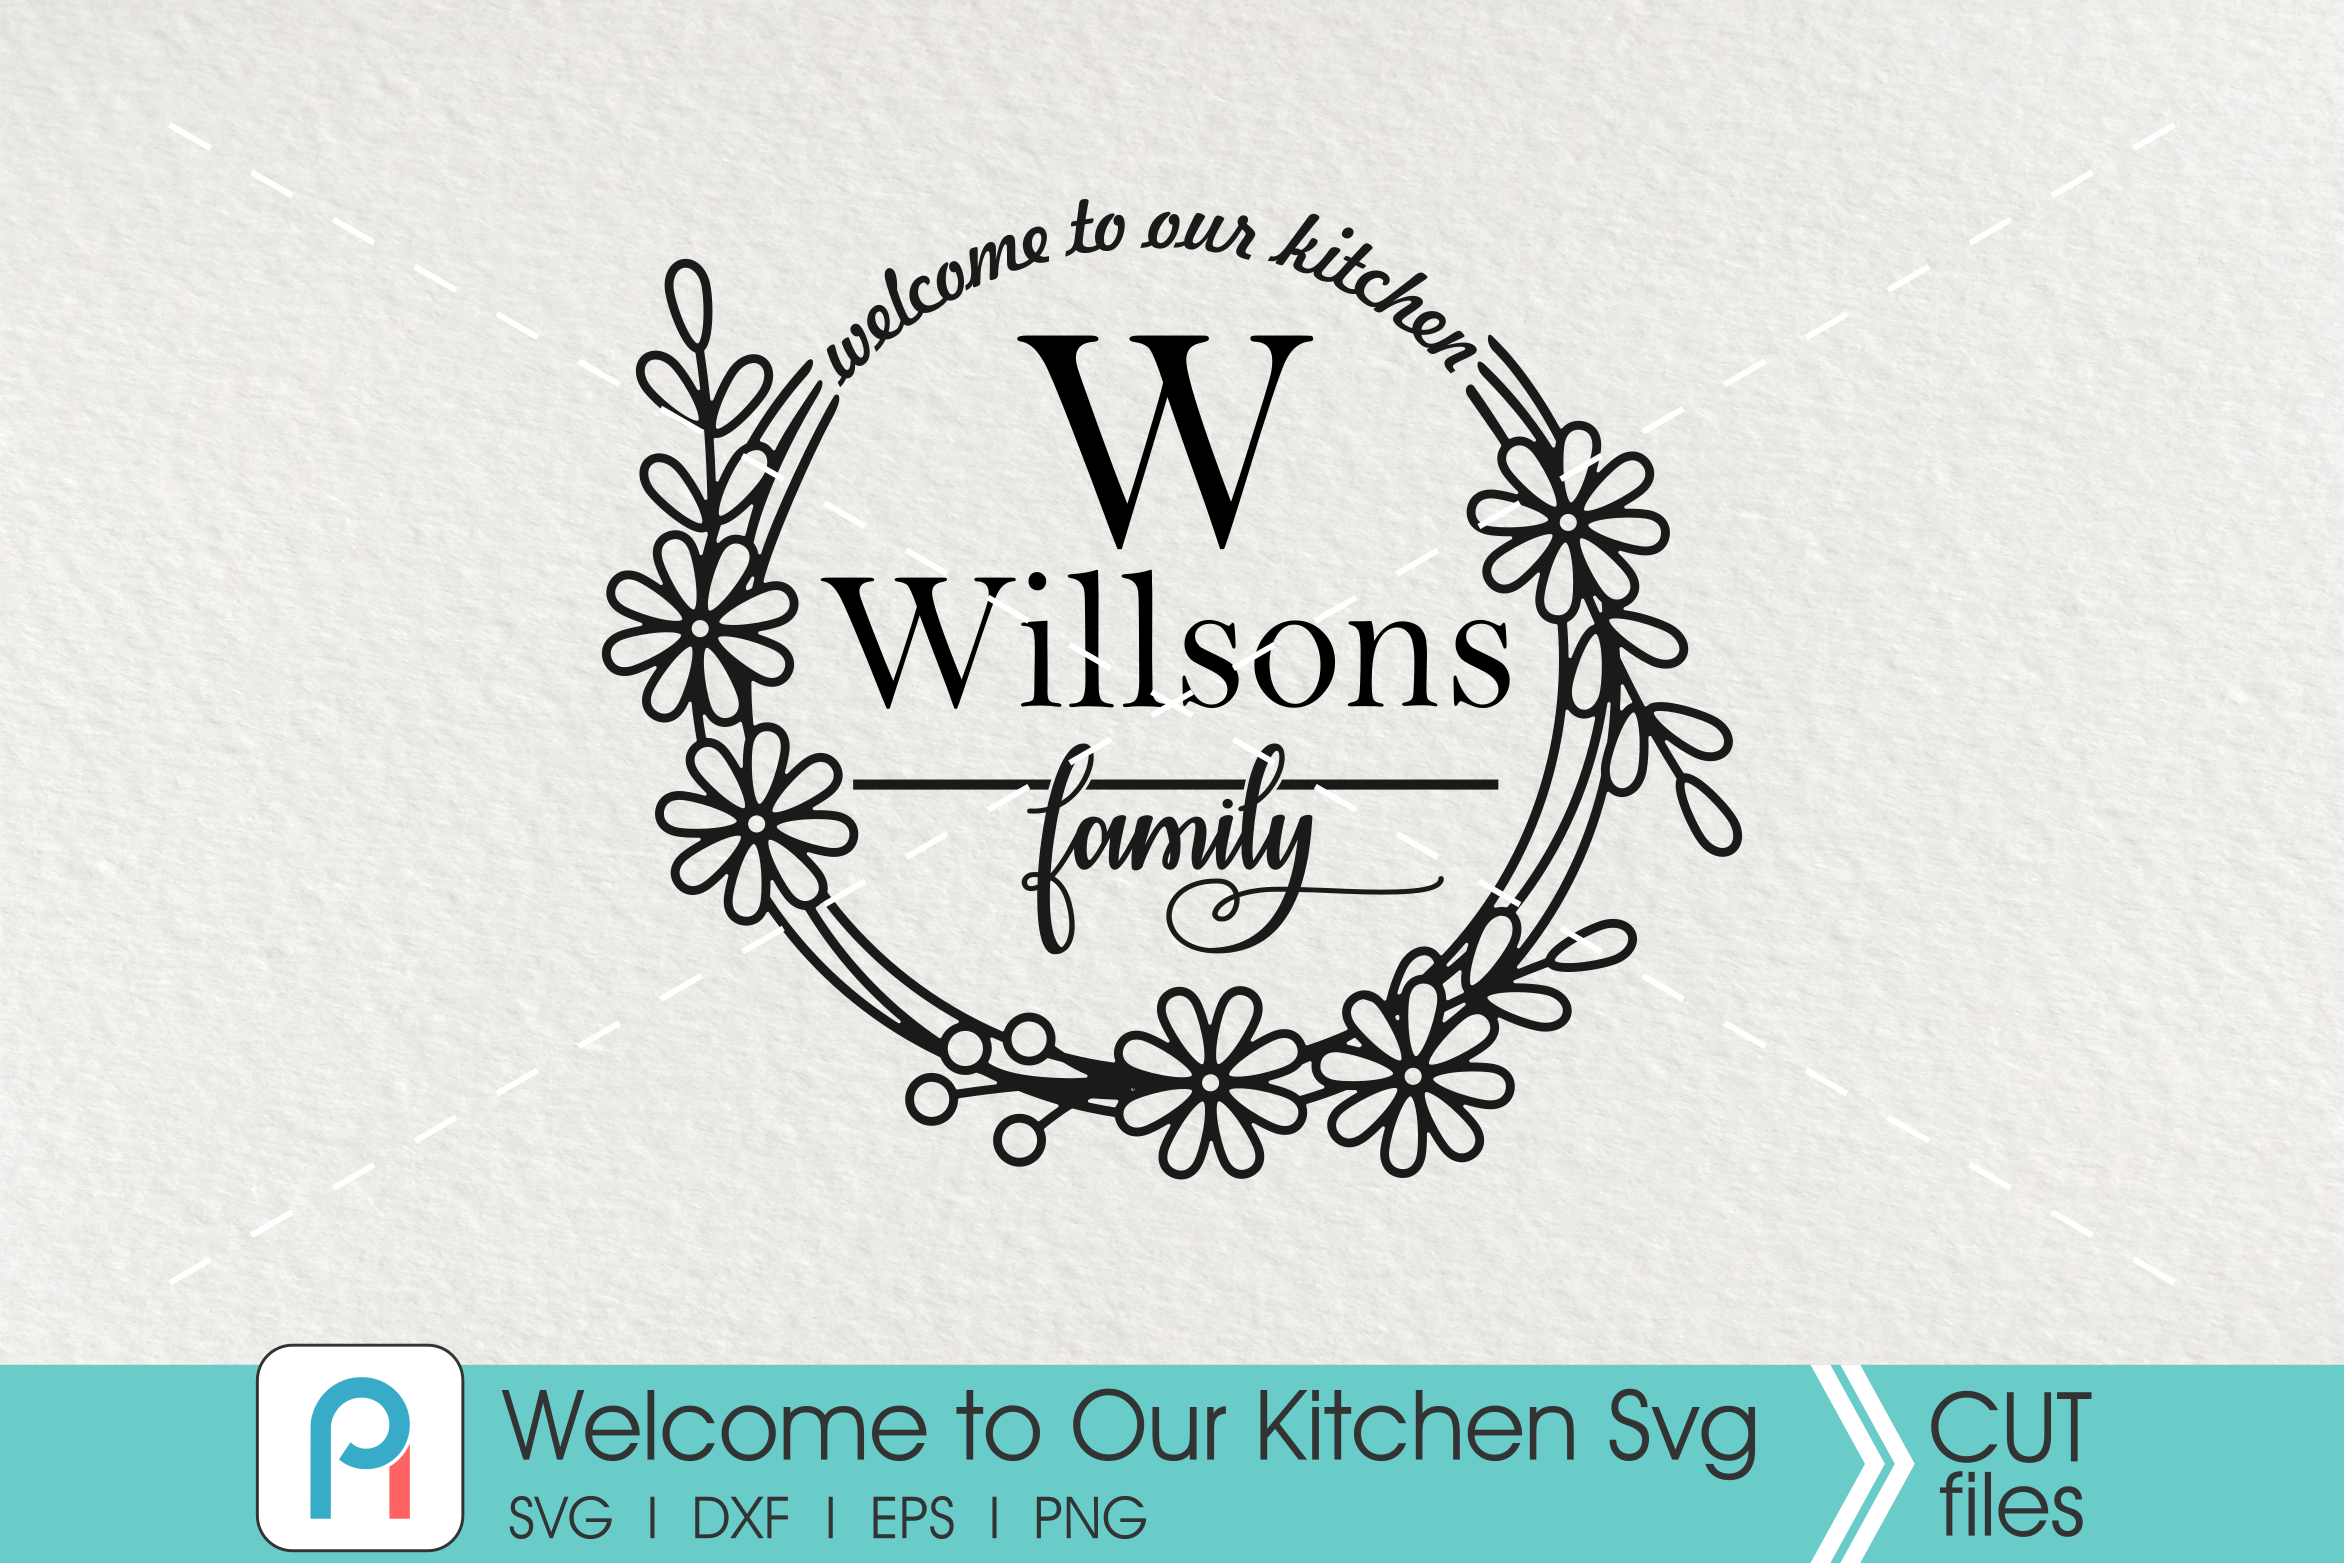 Download Welcome to Our Kitchen Svg, Kitchen Svg, Kitchen Clip Art ...